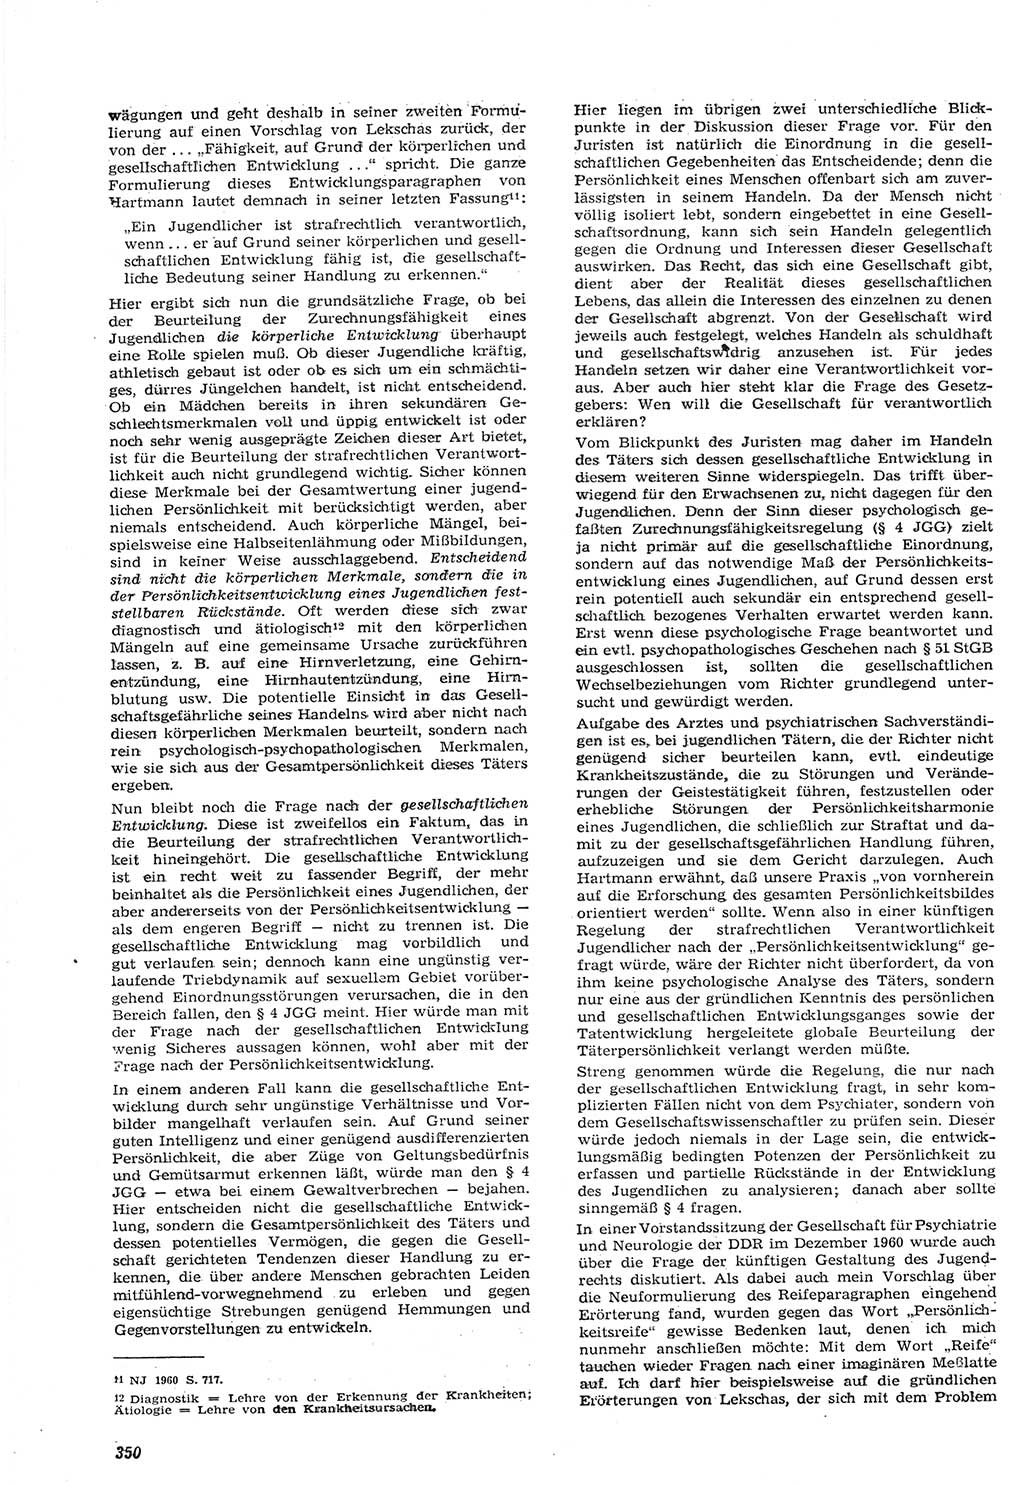 Neue Justiz (NJ), Zeitschrift für Recht und Rechtswissenschaft [Deutsche Demokratische Republik (DDR)], 15. Jahrgang 1961, Seite 350 (NJ DDR 1961, S. 350)